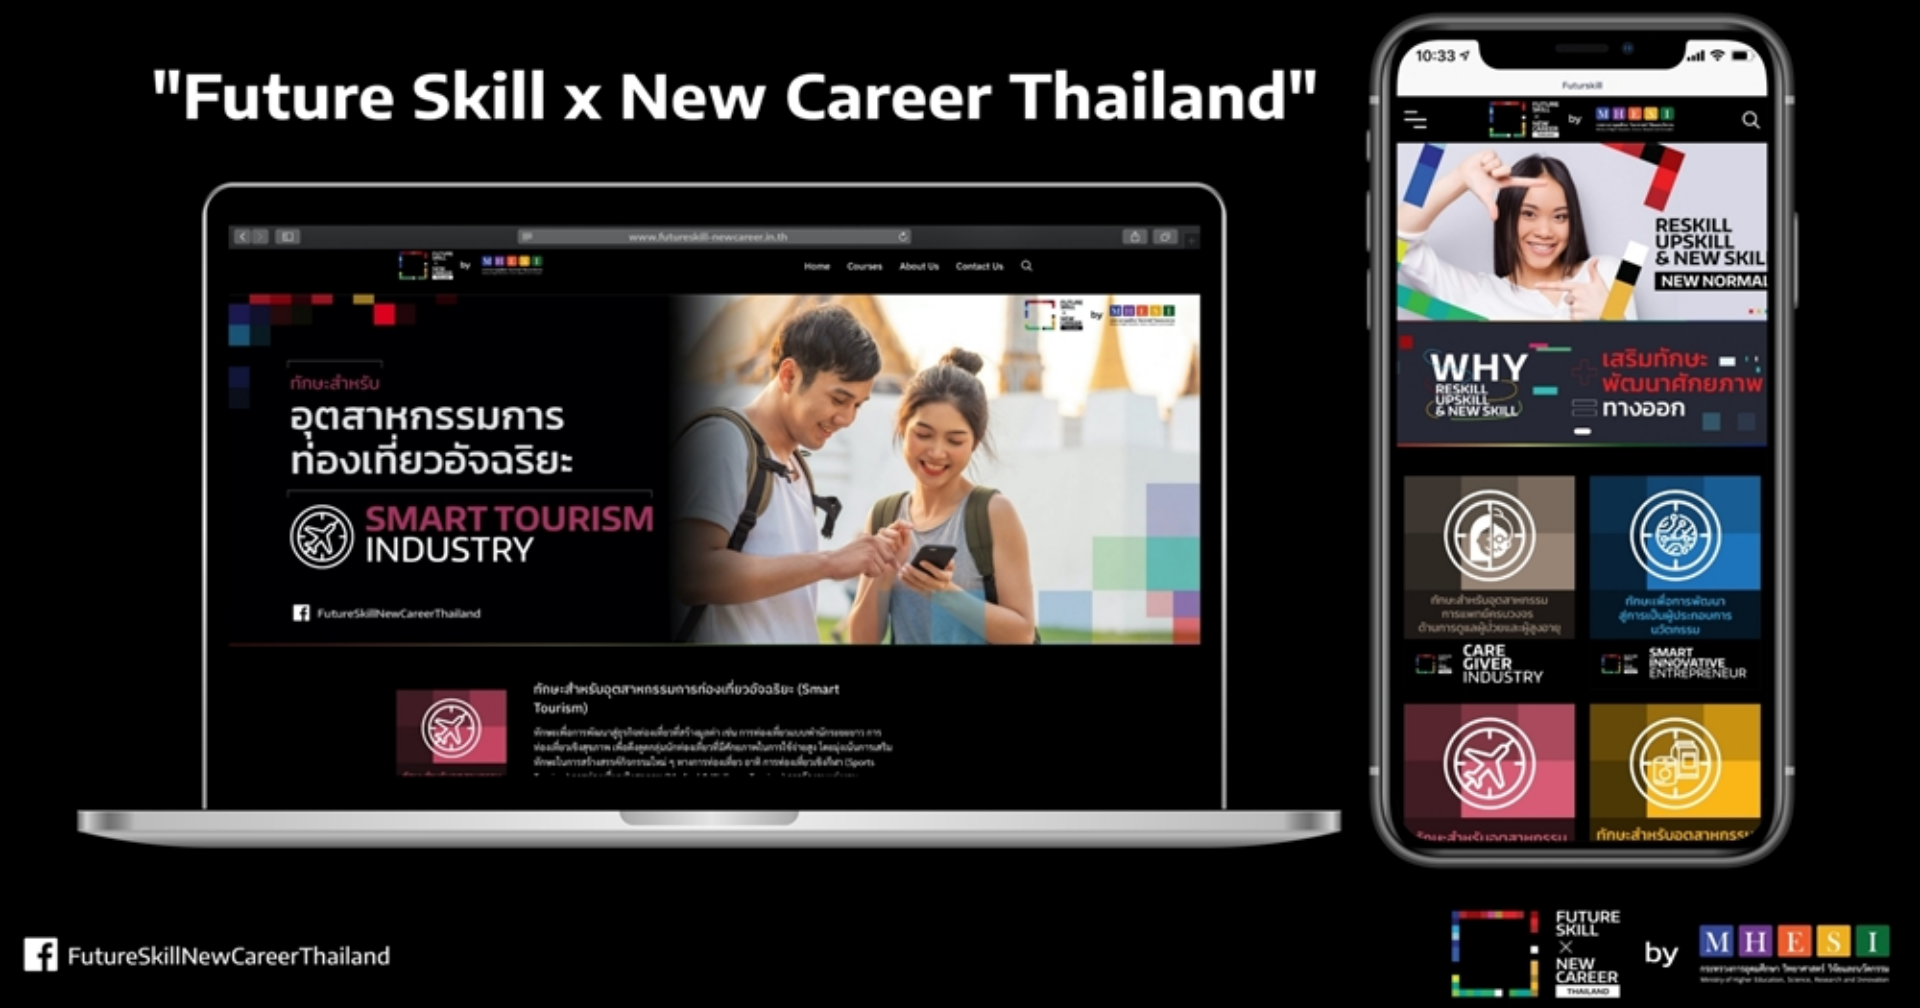 อว. เปิดตัวแพลตฟอร์ม “Future Skill x New Career Thailand” ปิดช่องว่างการเรียนรู้ รับมือโลกในศตวรรษที่ 21